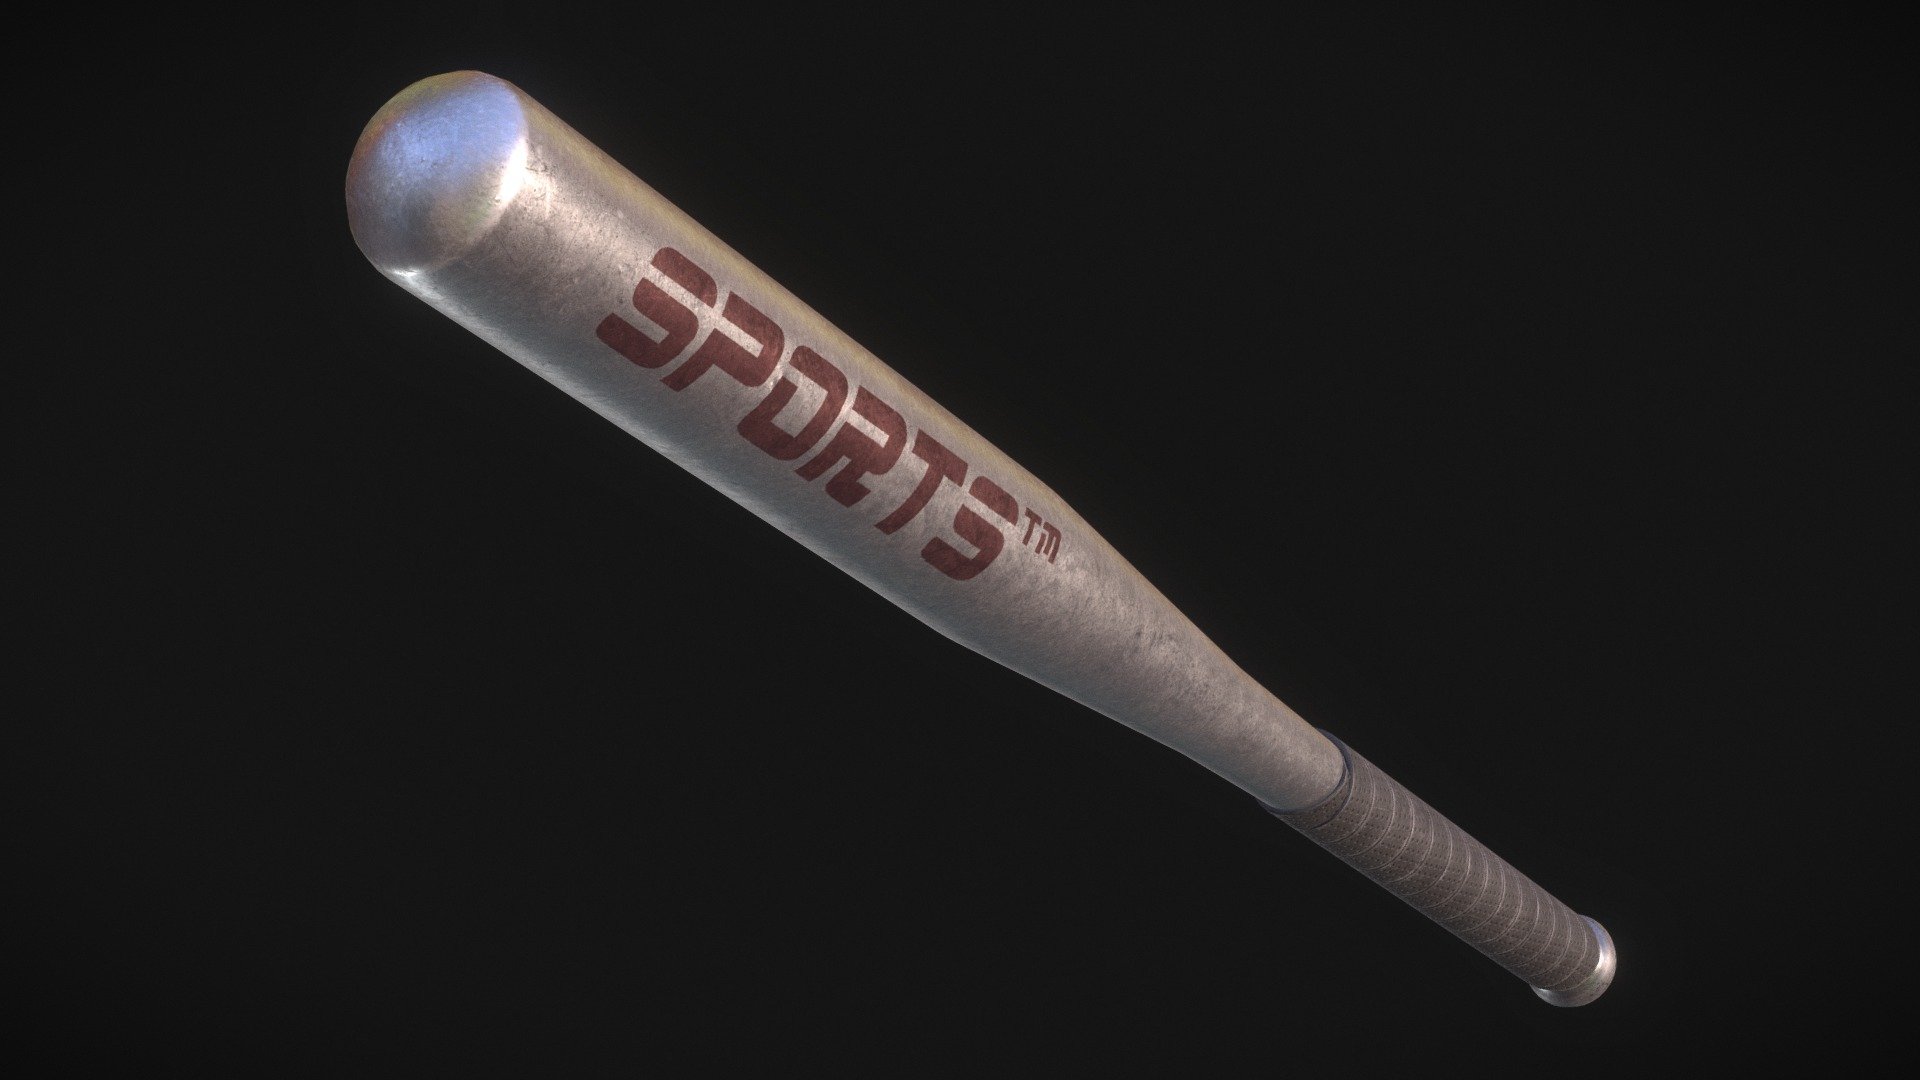 An aluminum baseball bat.

For Jabroni Brawl: Episode 3. https://store.steampowered.com/app/869480/Jabroni_Brawl_Episode_3/

Modelled in Blender. Textured in Substance Painter 3d model